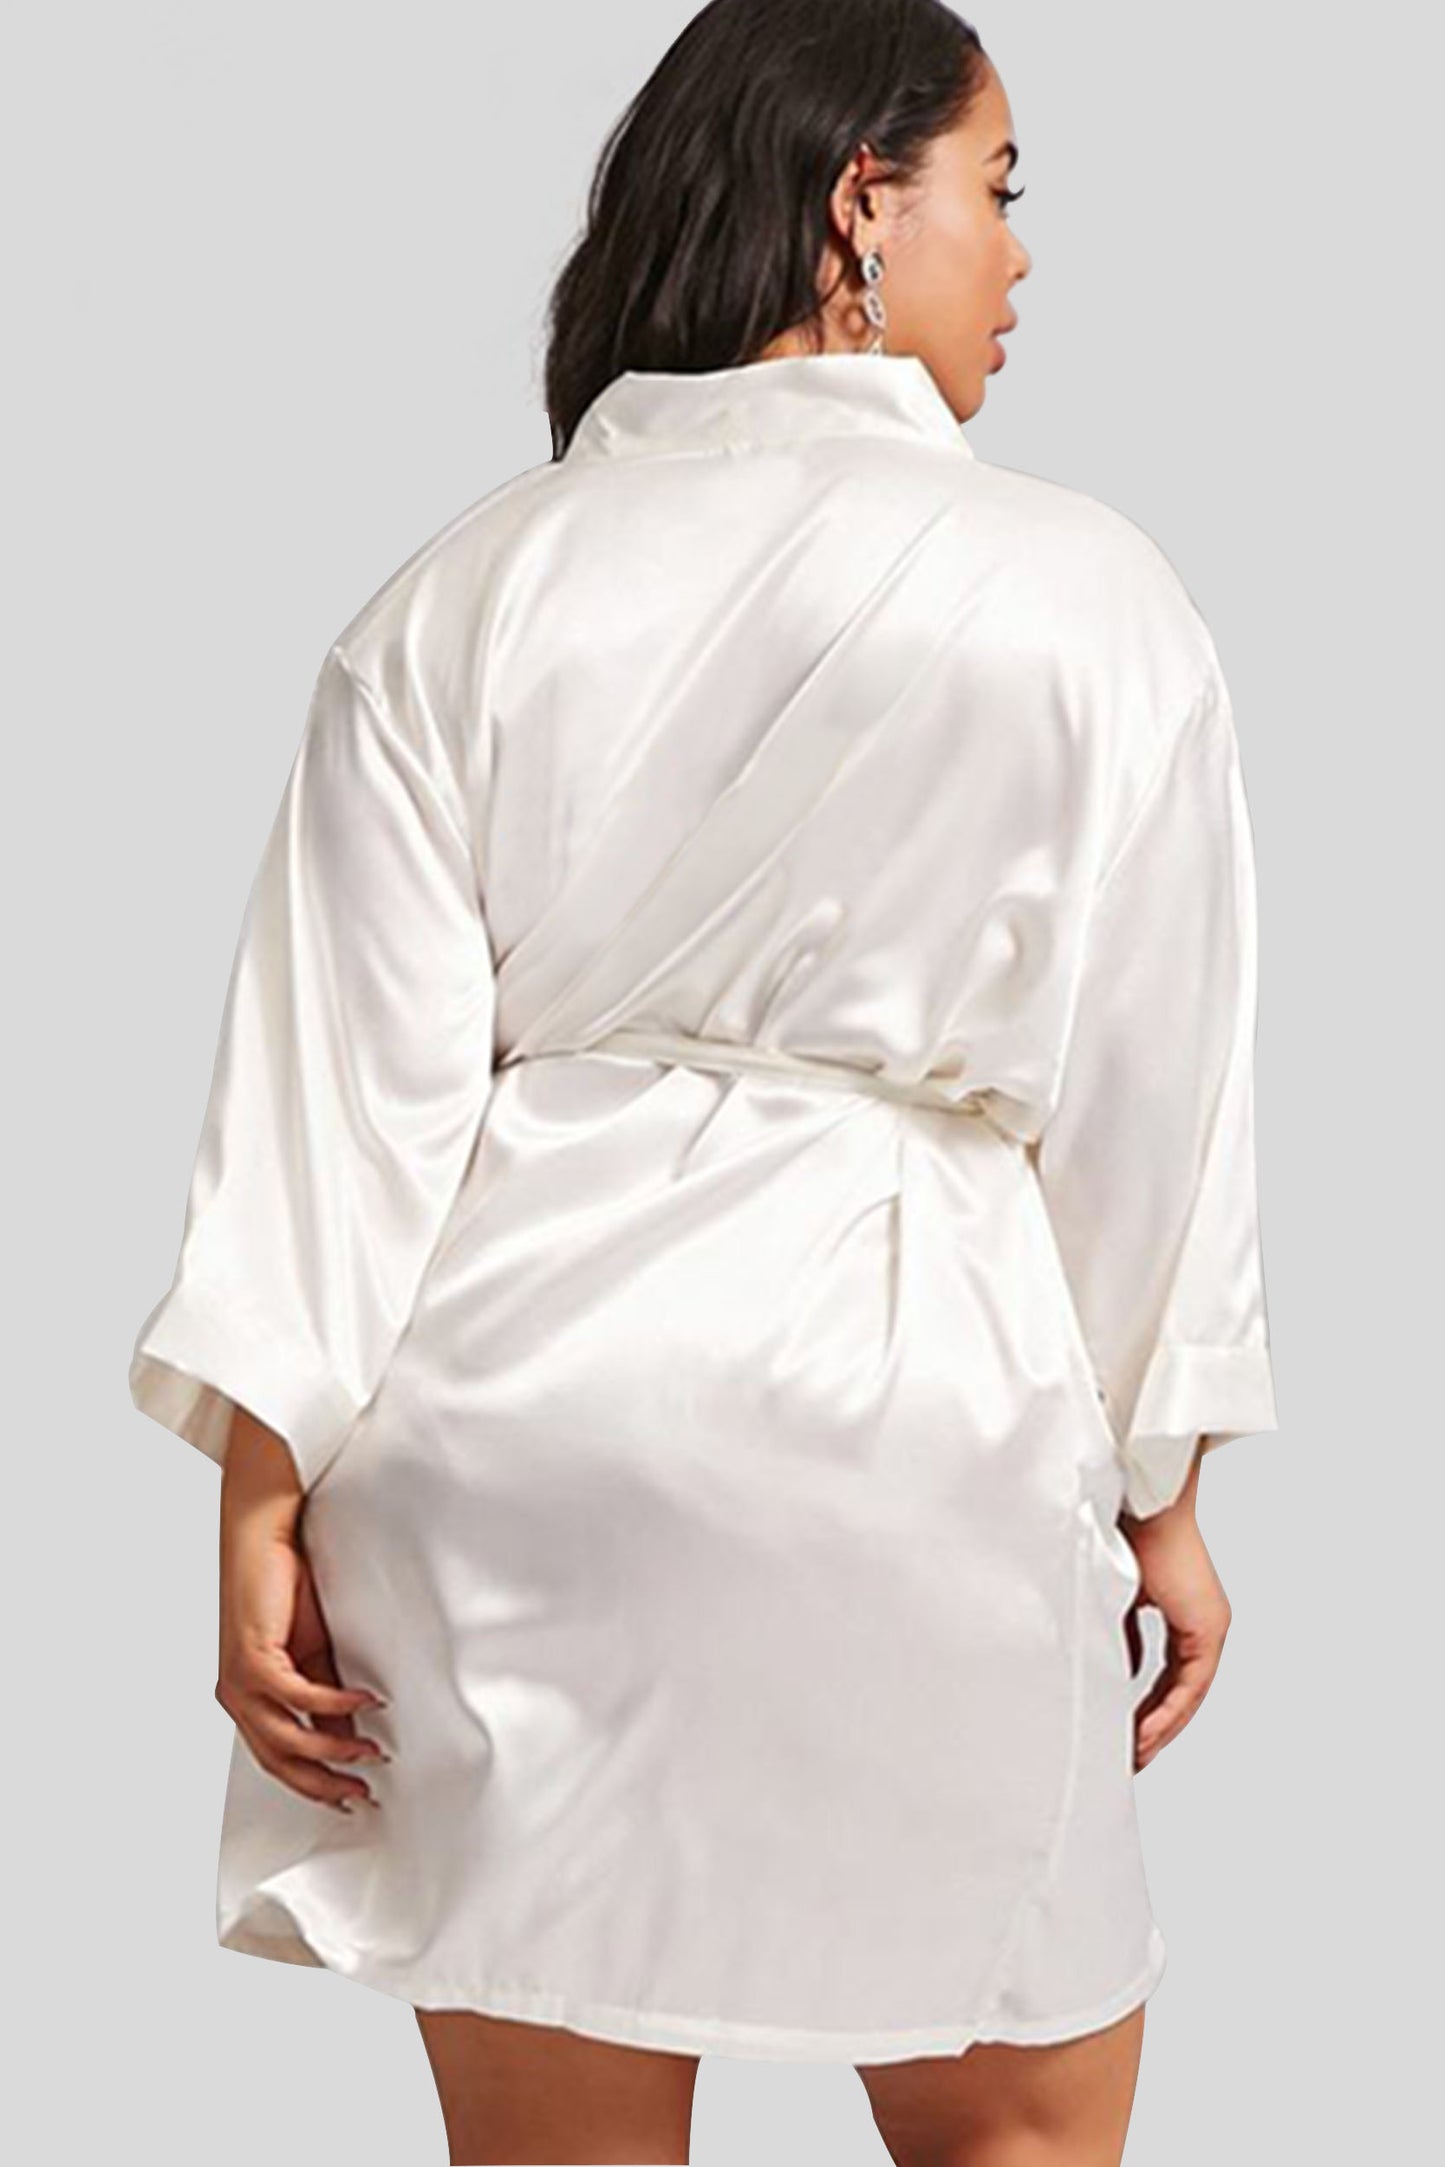 Ivory Satin Kimono Robe Plus Size Back View - Bridal & Bridesmaid Robes Wedding Gift - Bridal Gift - Bridesmaid Gift - Kimono Robe - Satin Robe - Kimono Satin Robe - PrettyRobes